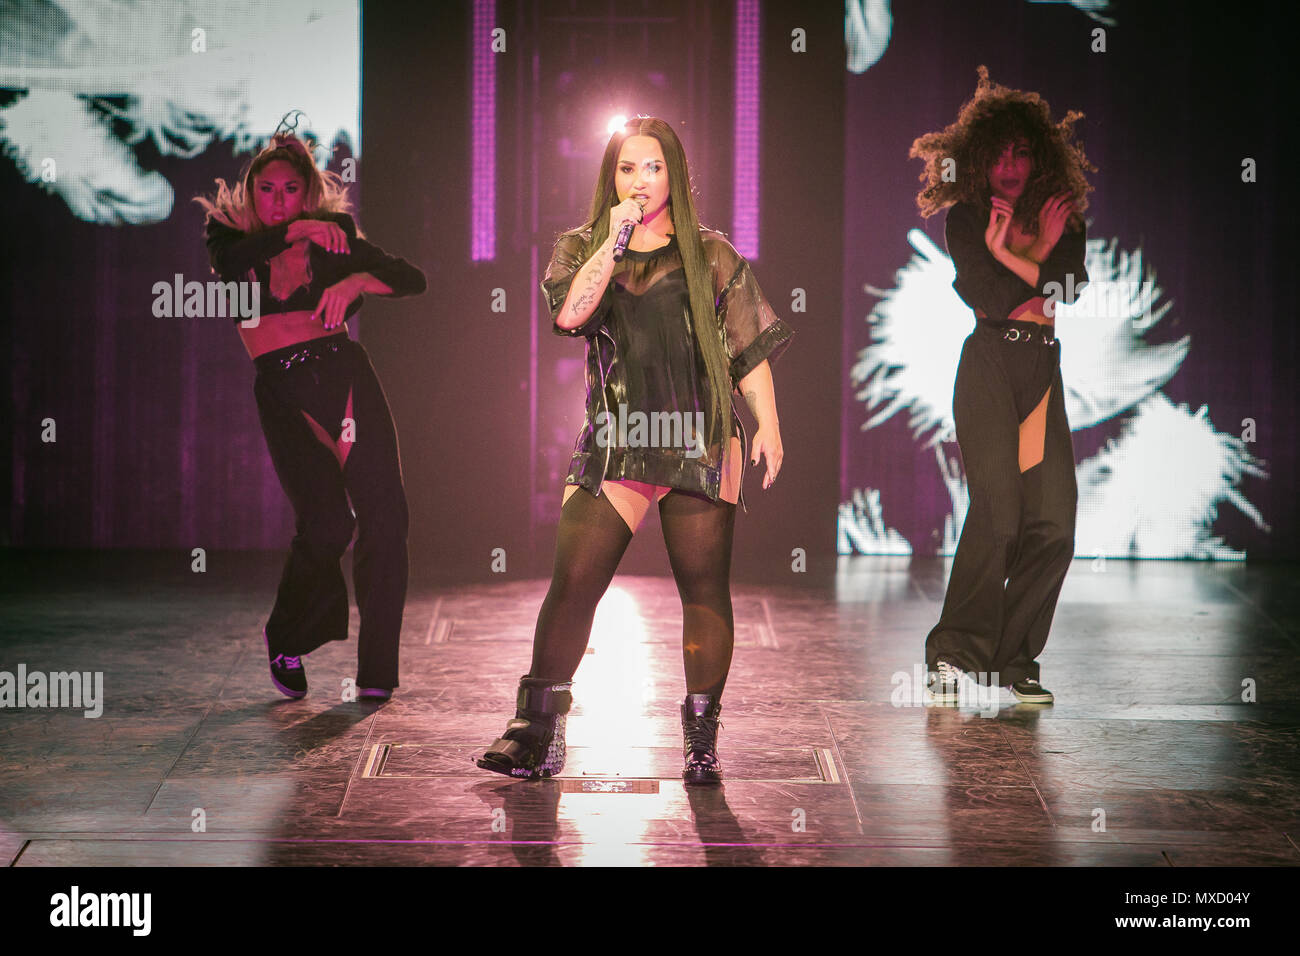 Norvège, Oslo - 1 juin 2018. Le chanteur, auteur-compositeur et musicien Demi Lovato effectue un concert live à Oslo Spektrum d'Oslo. (Photo crédit : Gonzales Photo - Tord Litleskare). Banque D'Images